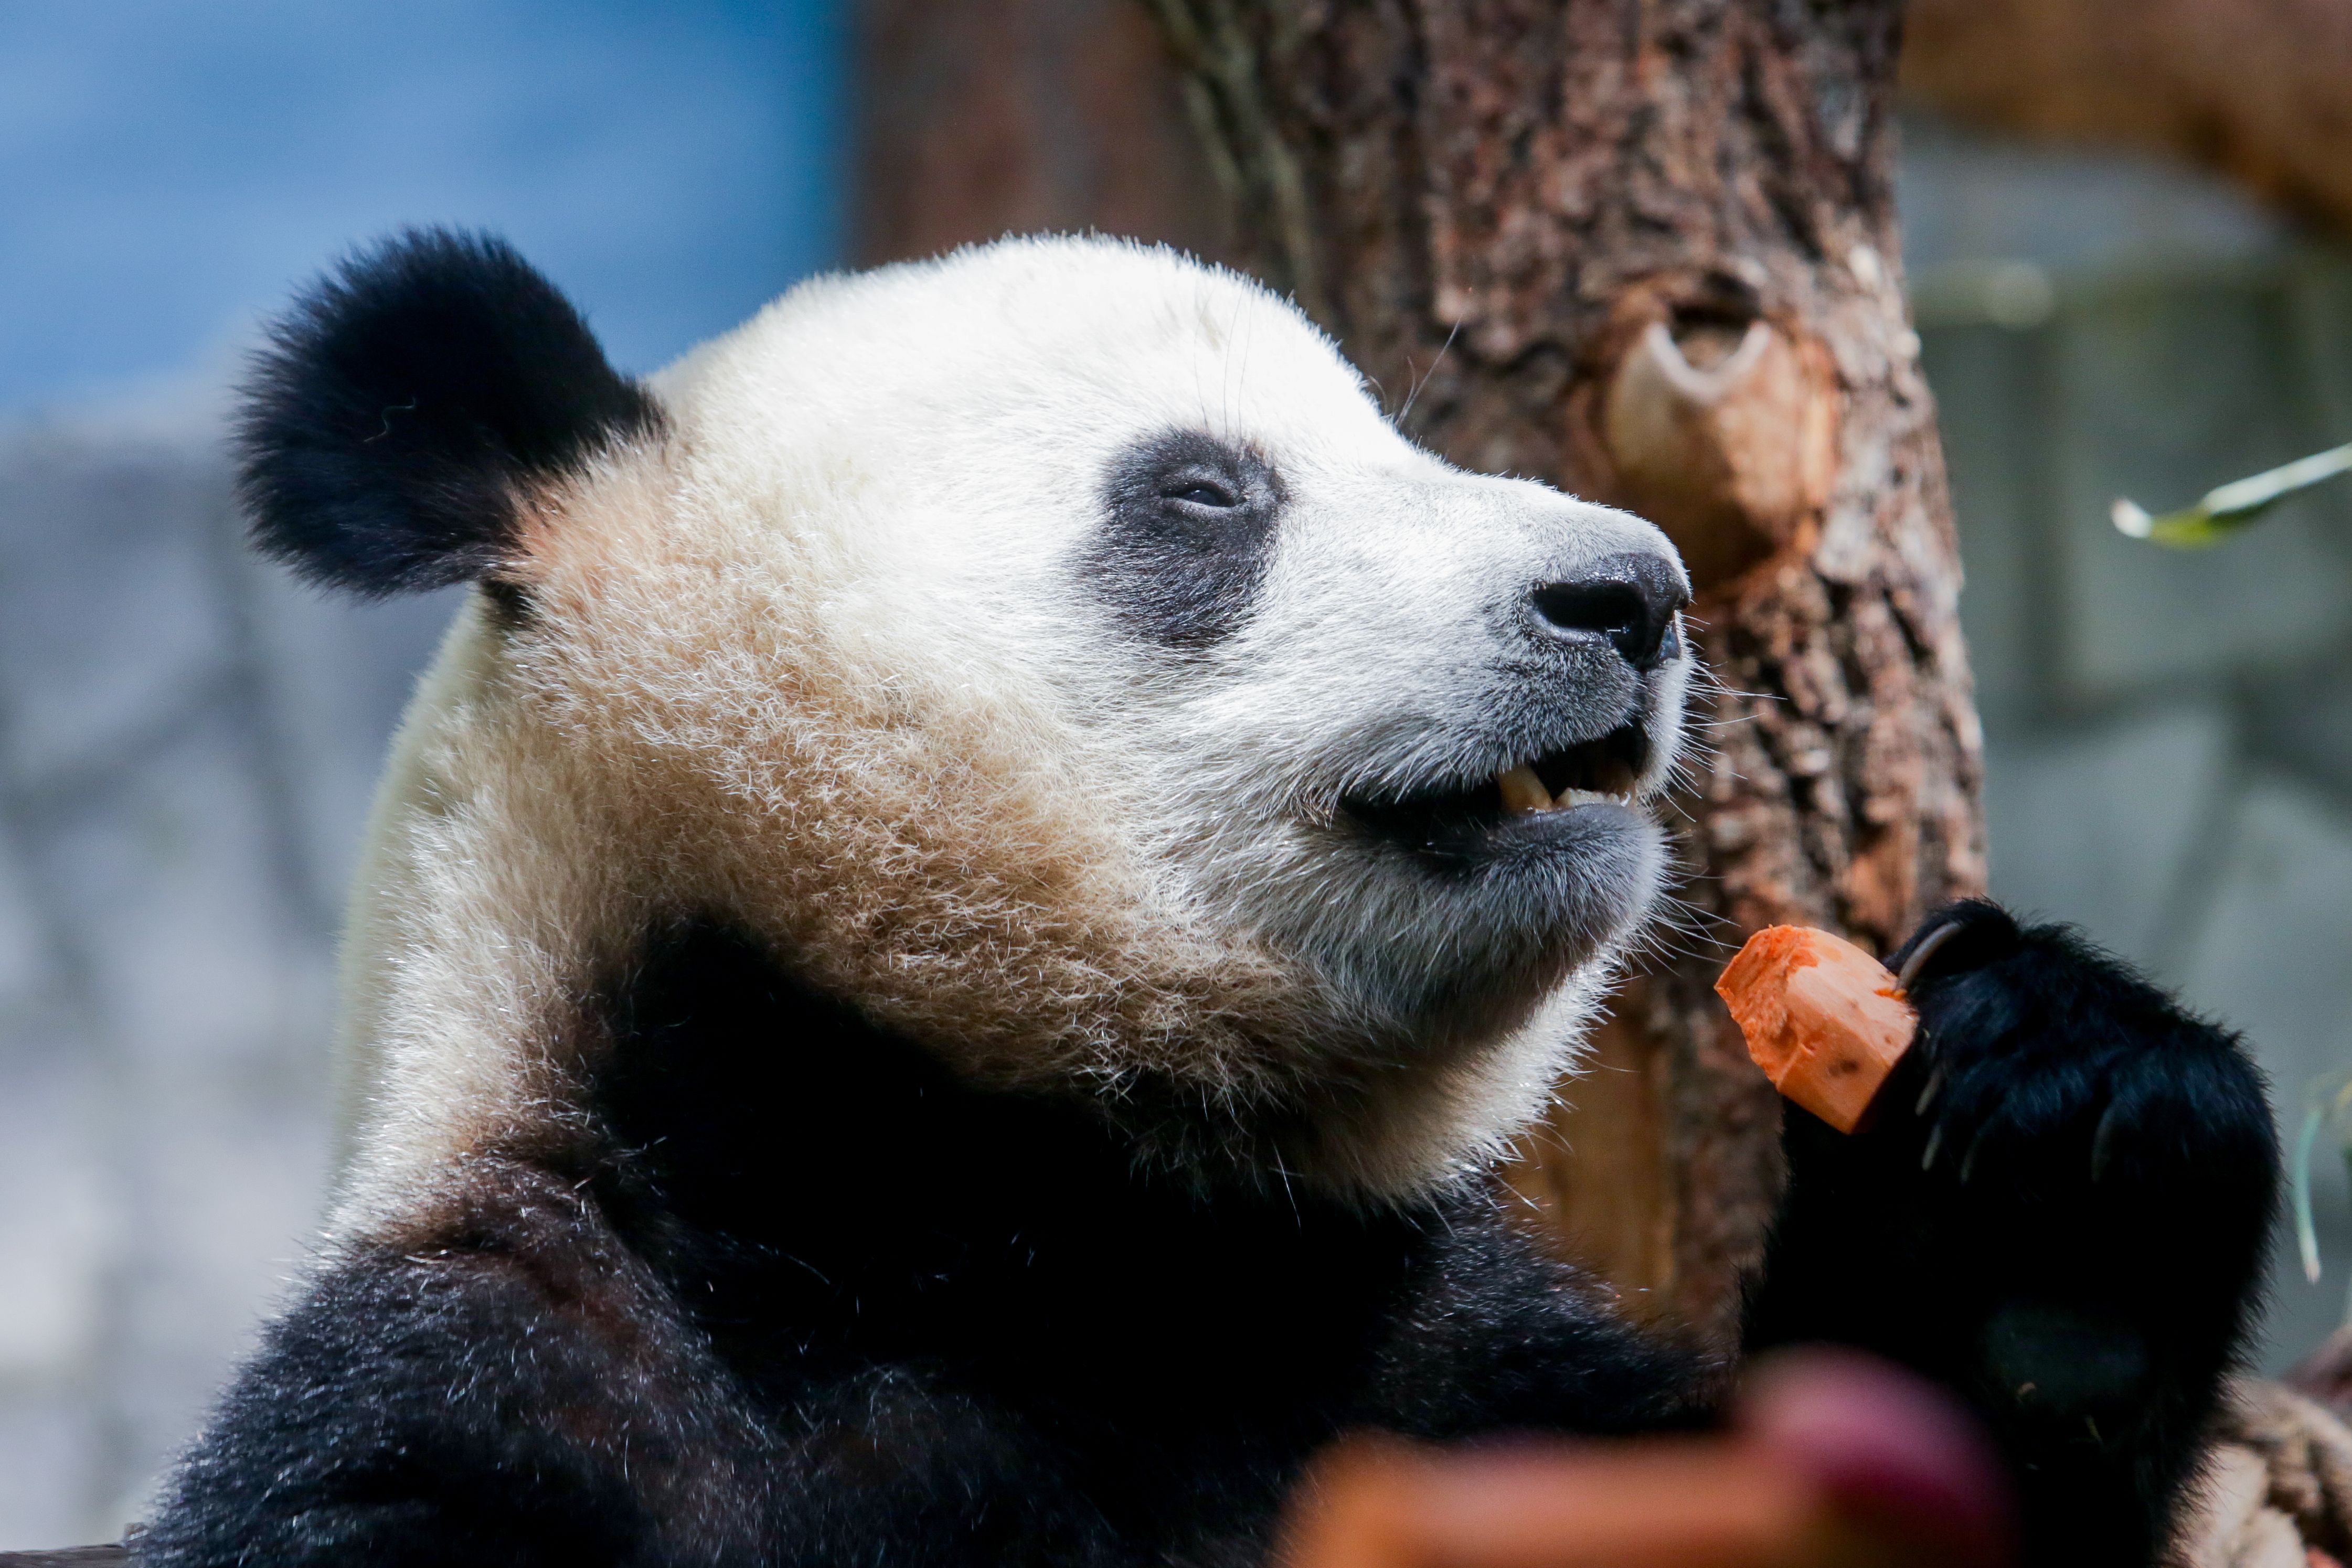 Панда живет в зоопарке. Панда жуи в Московском зоопарке. Московский зоопарк панды жуи и Диндин. Зоопарк Москва панды жуи. Панда жуи из Московского зоопарка.